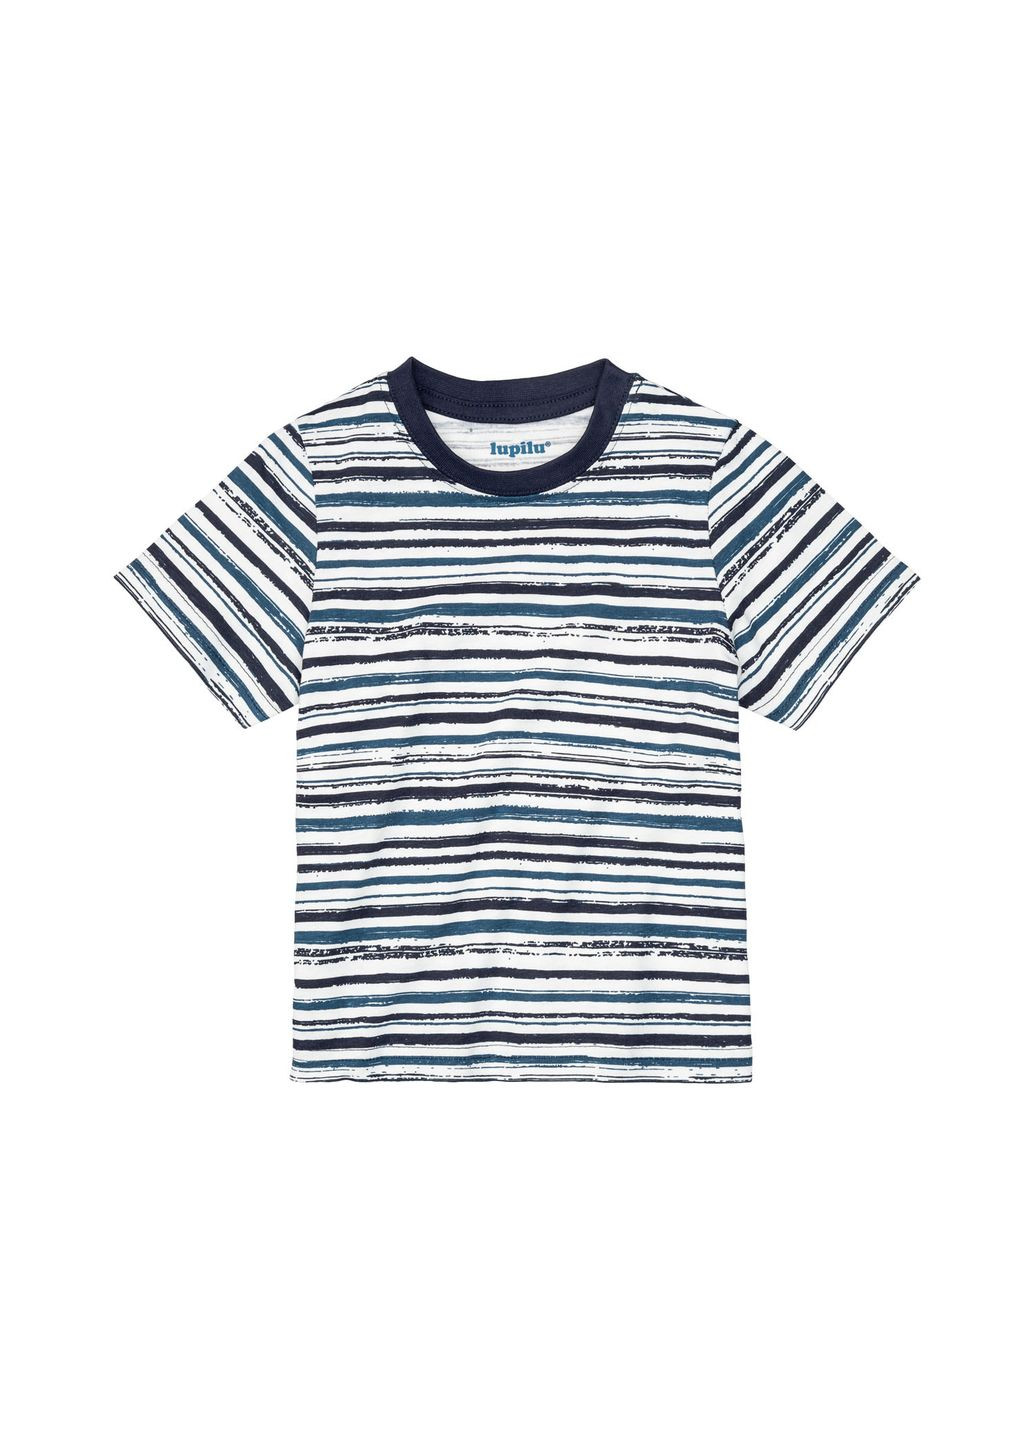 Комбинированная демисезонная футболка набор 3 шт. для мальчика 372241-н Lupilu